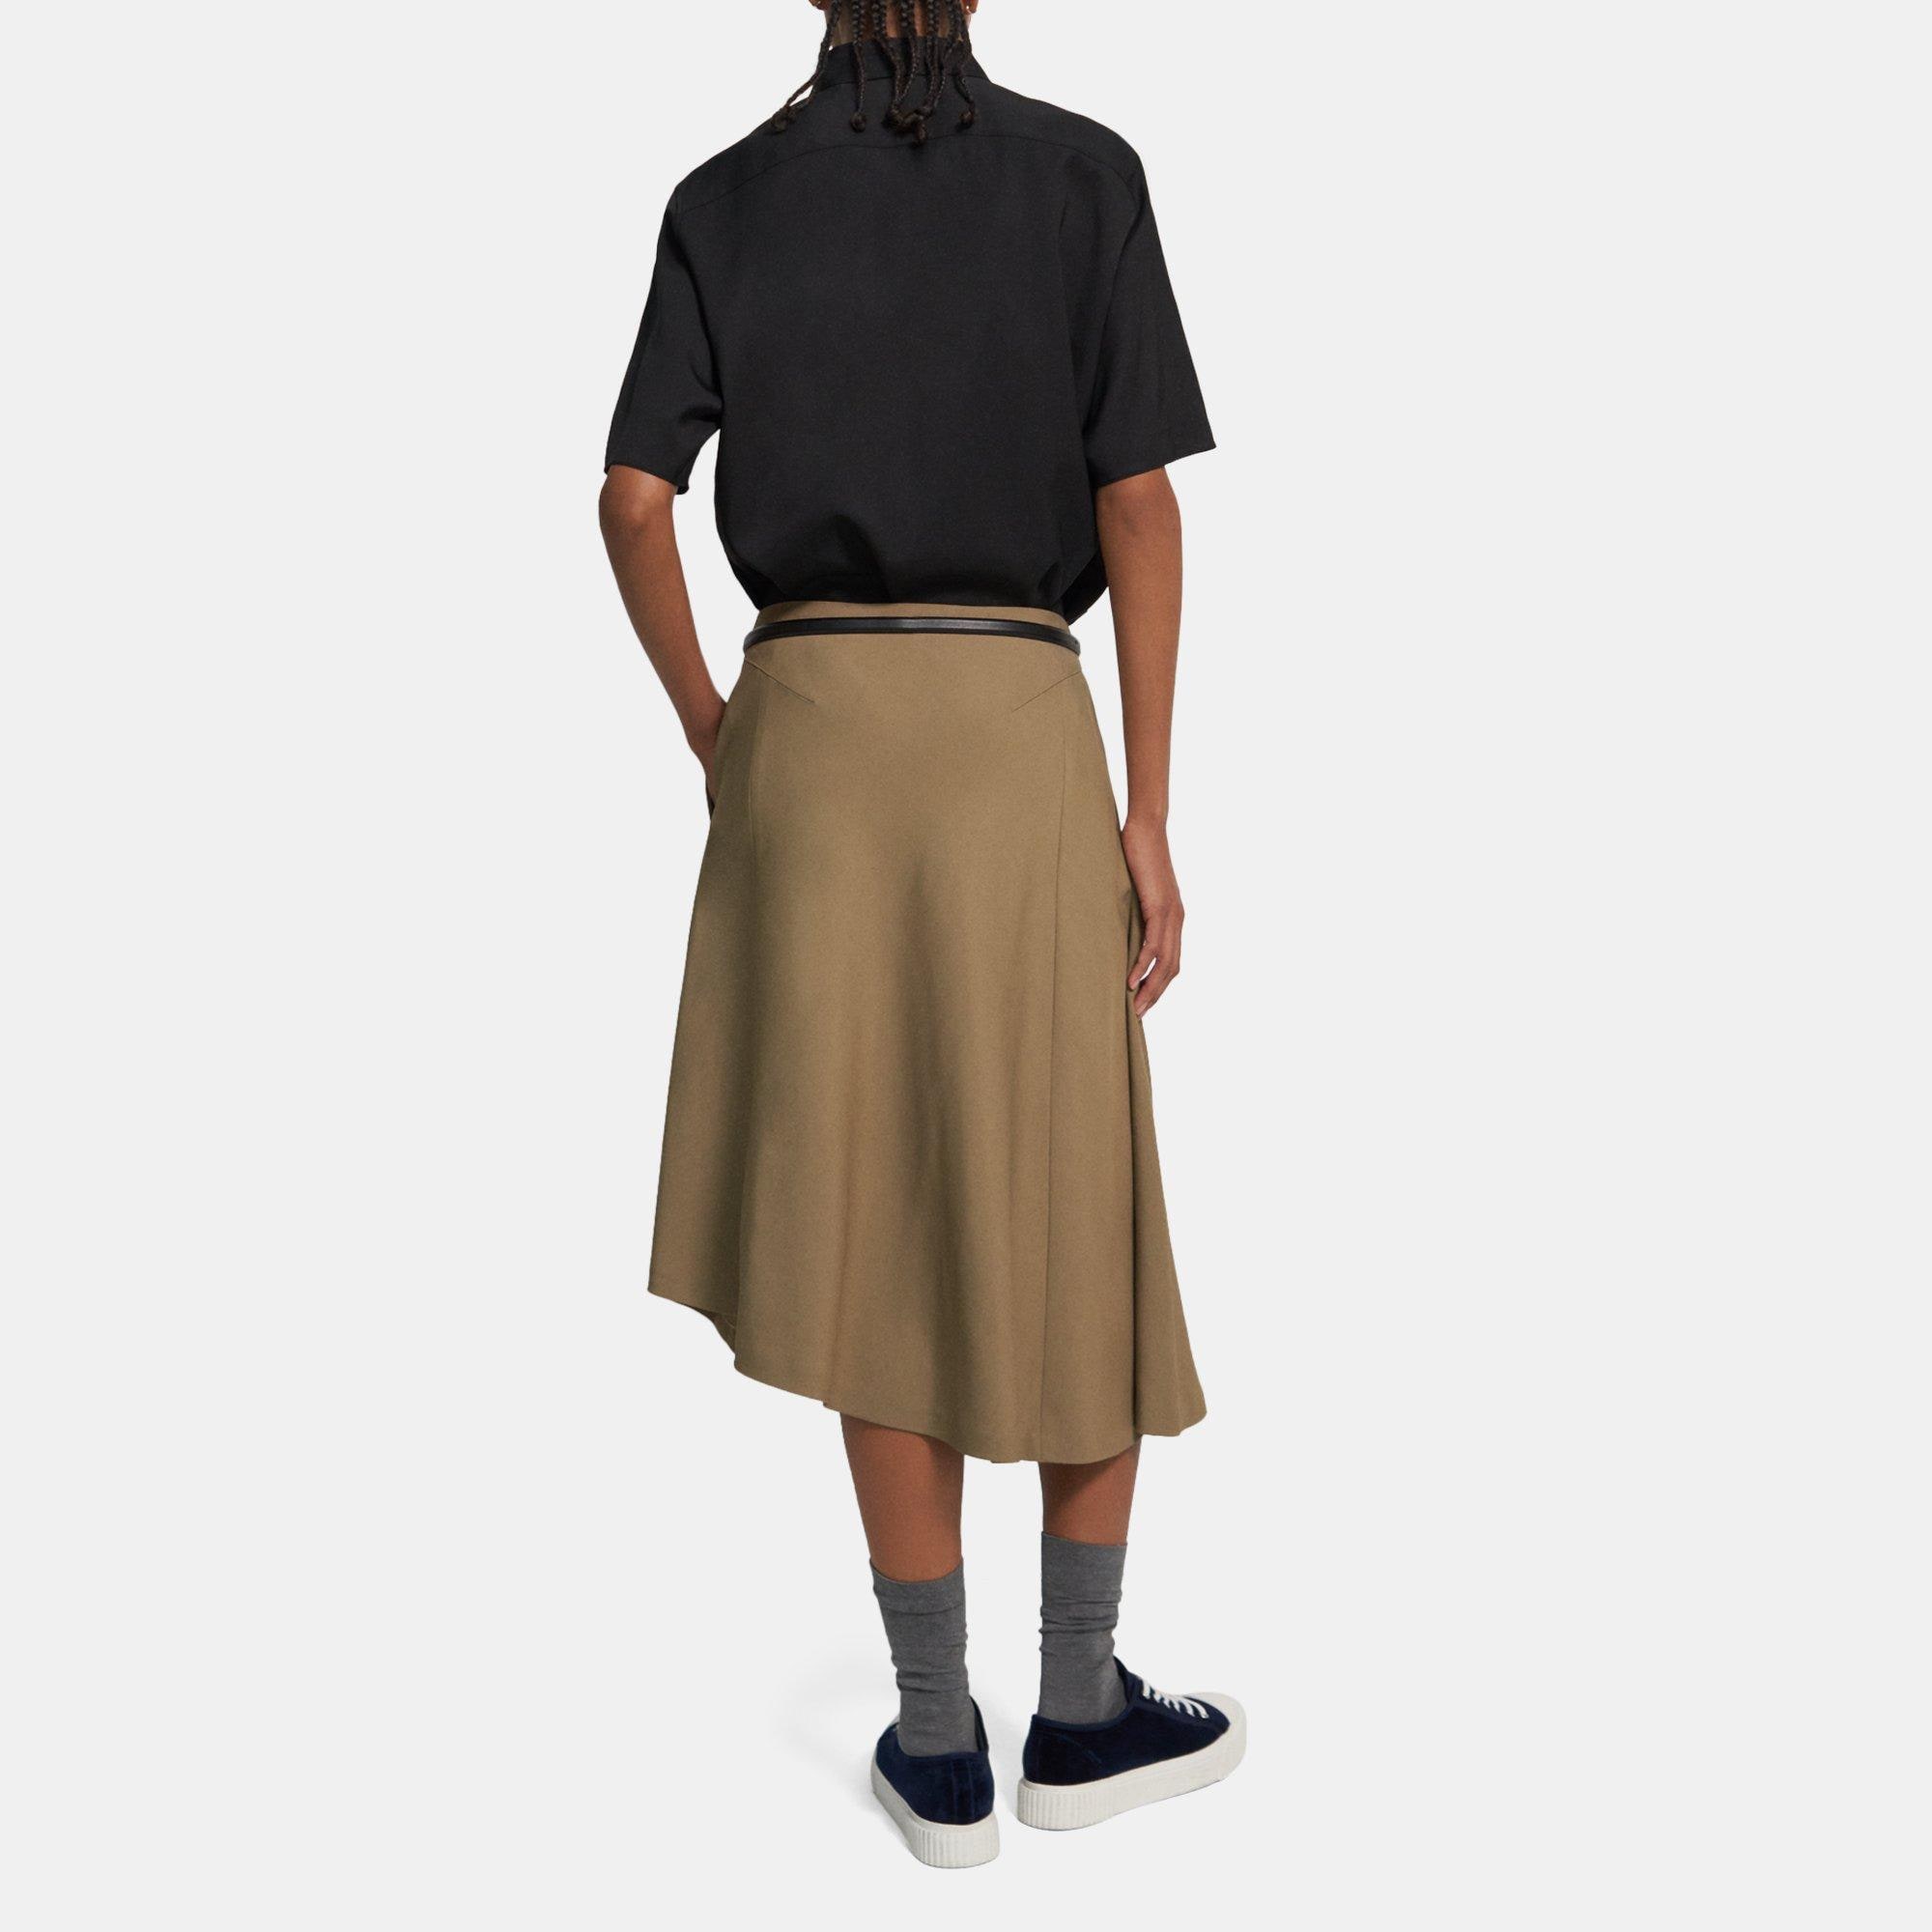 Women's Skirt in denim and viscose